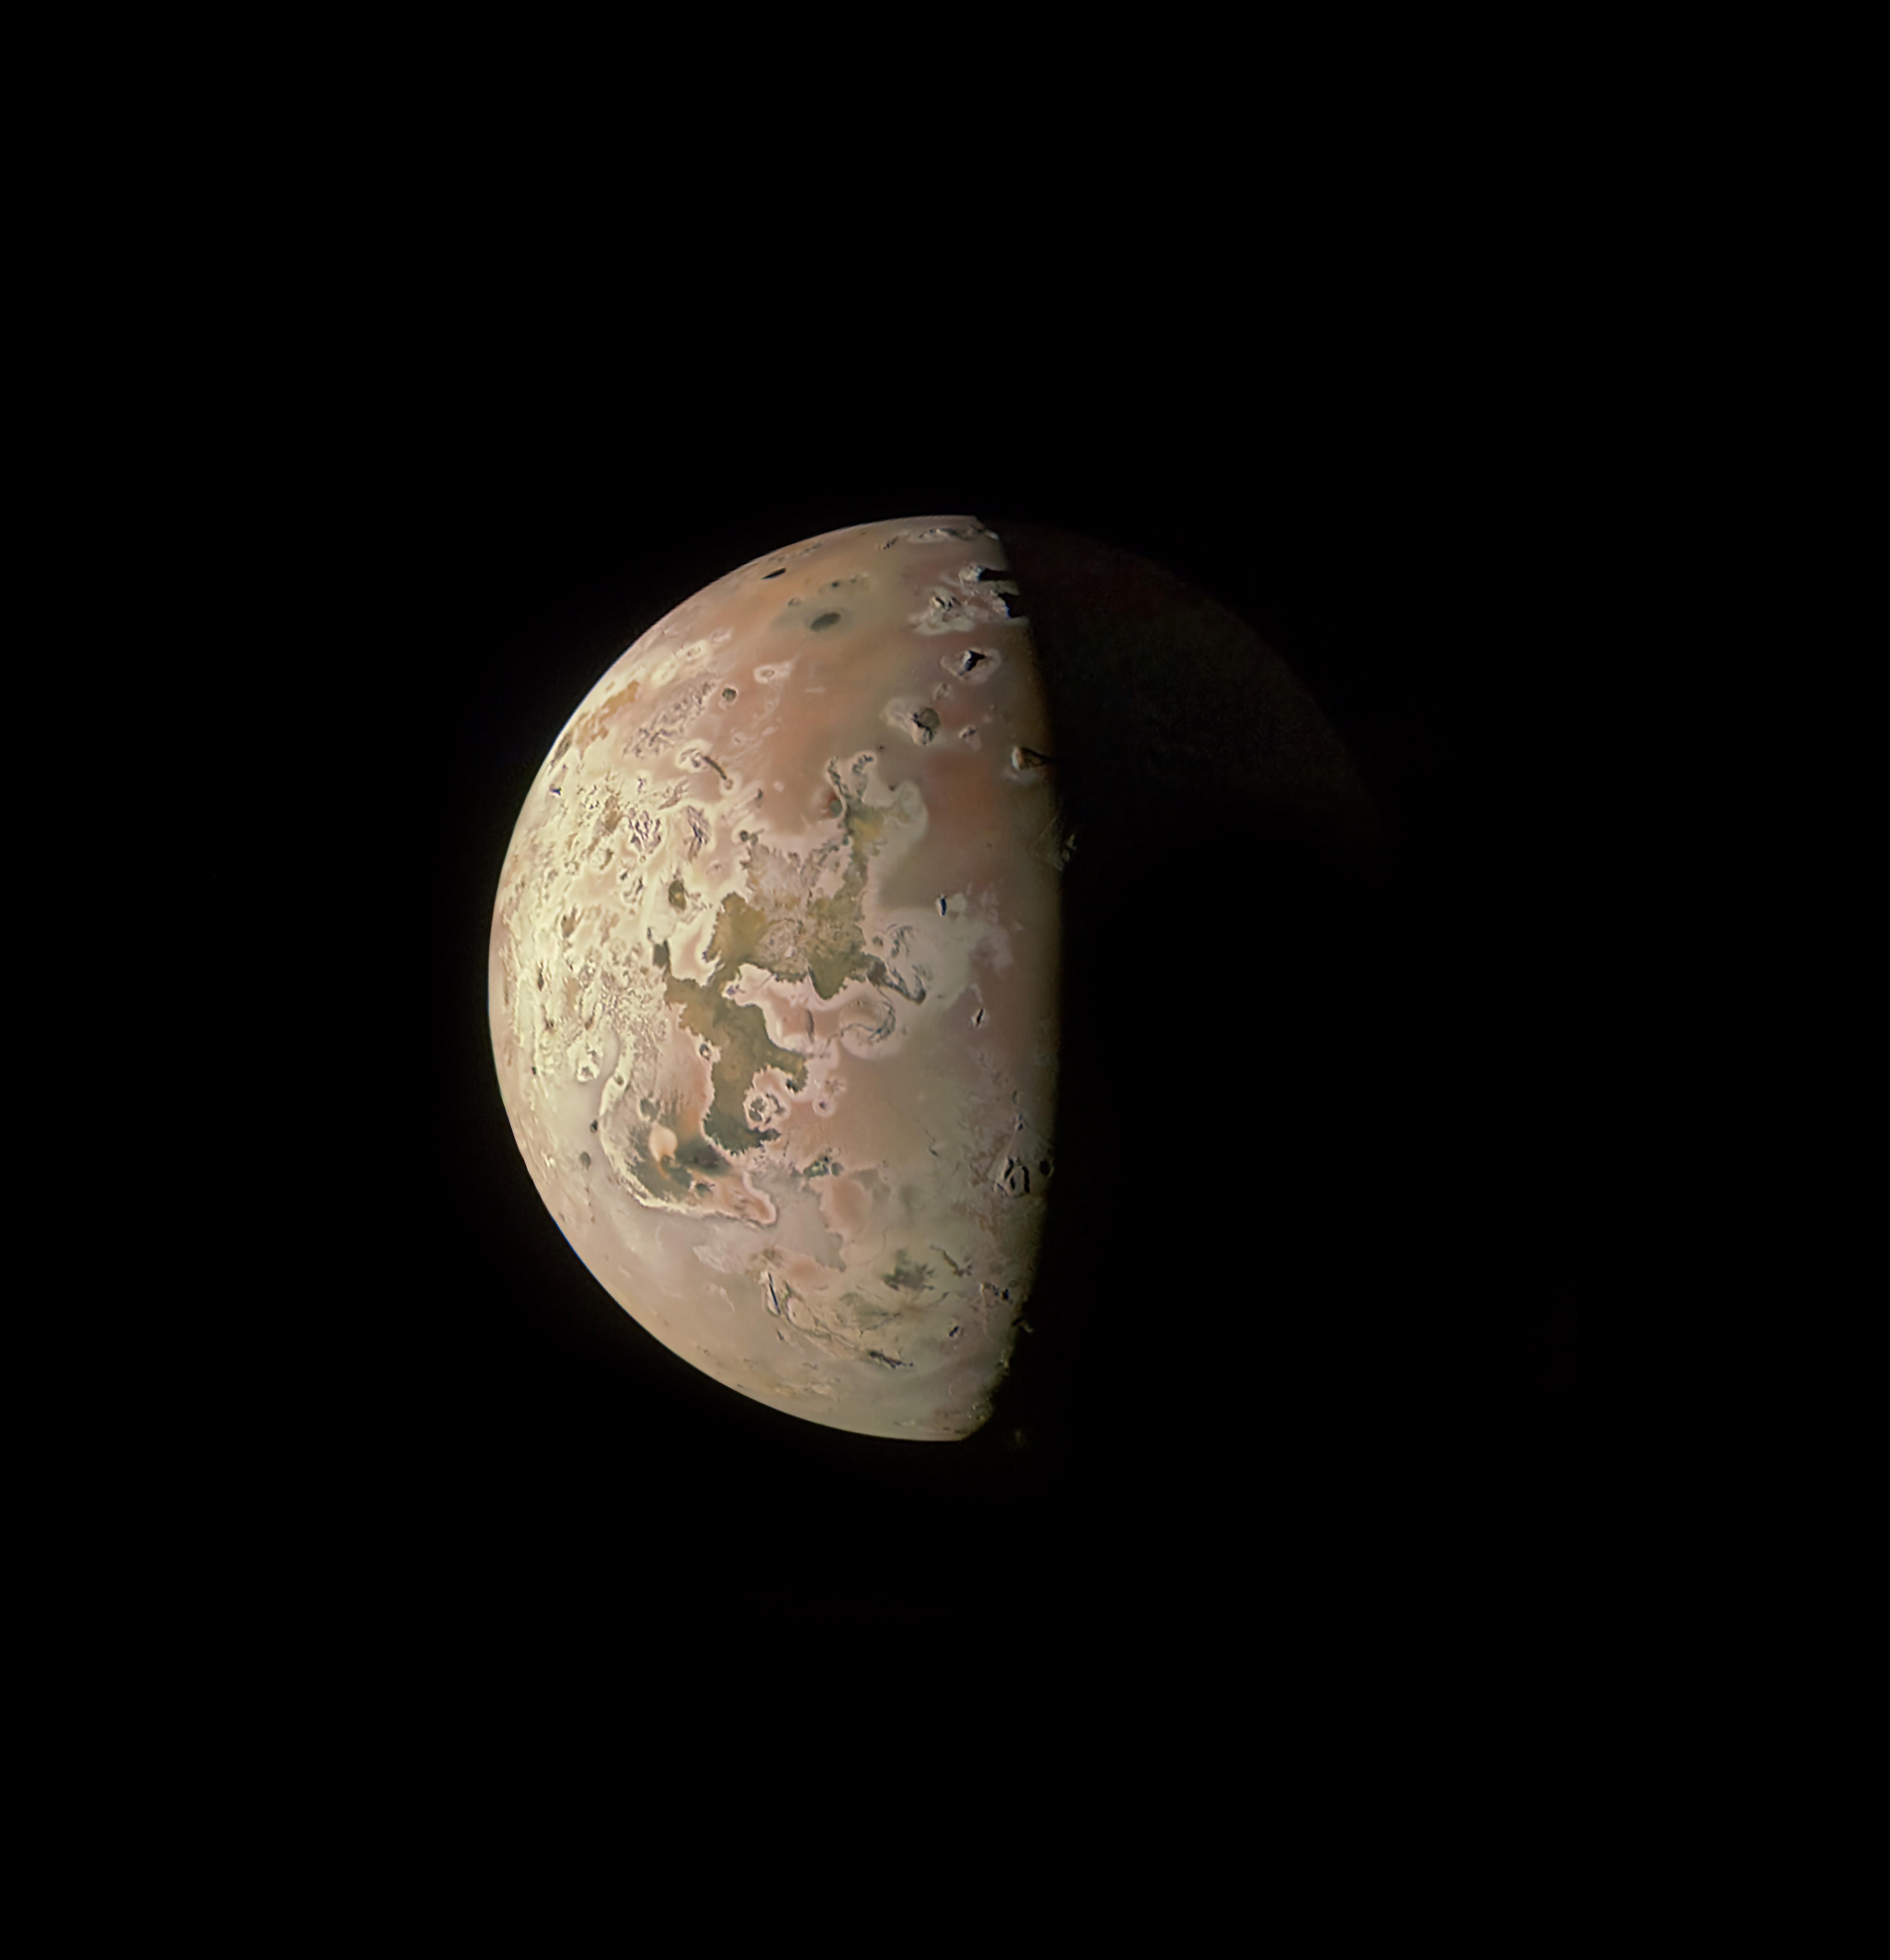 Juno de la NASA observará de cerca la luna volcánica Io de Júpiter el 30 de diciembre